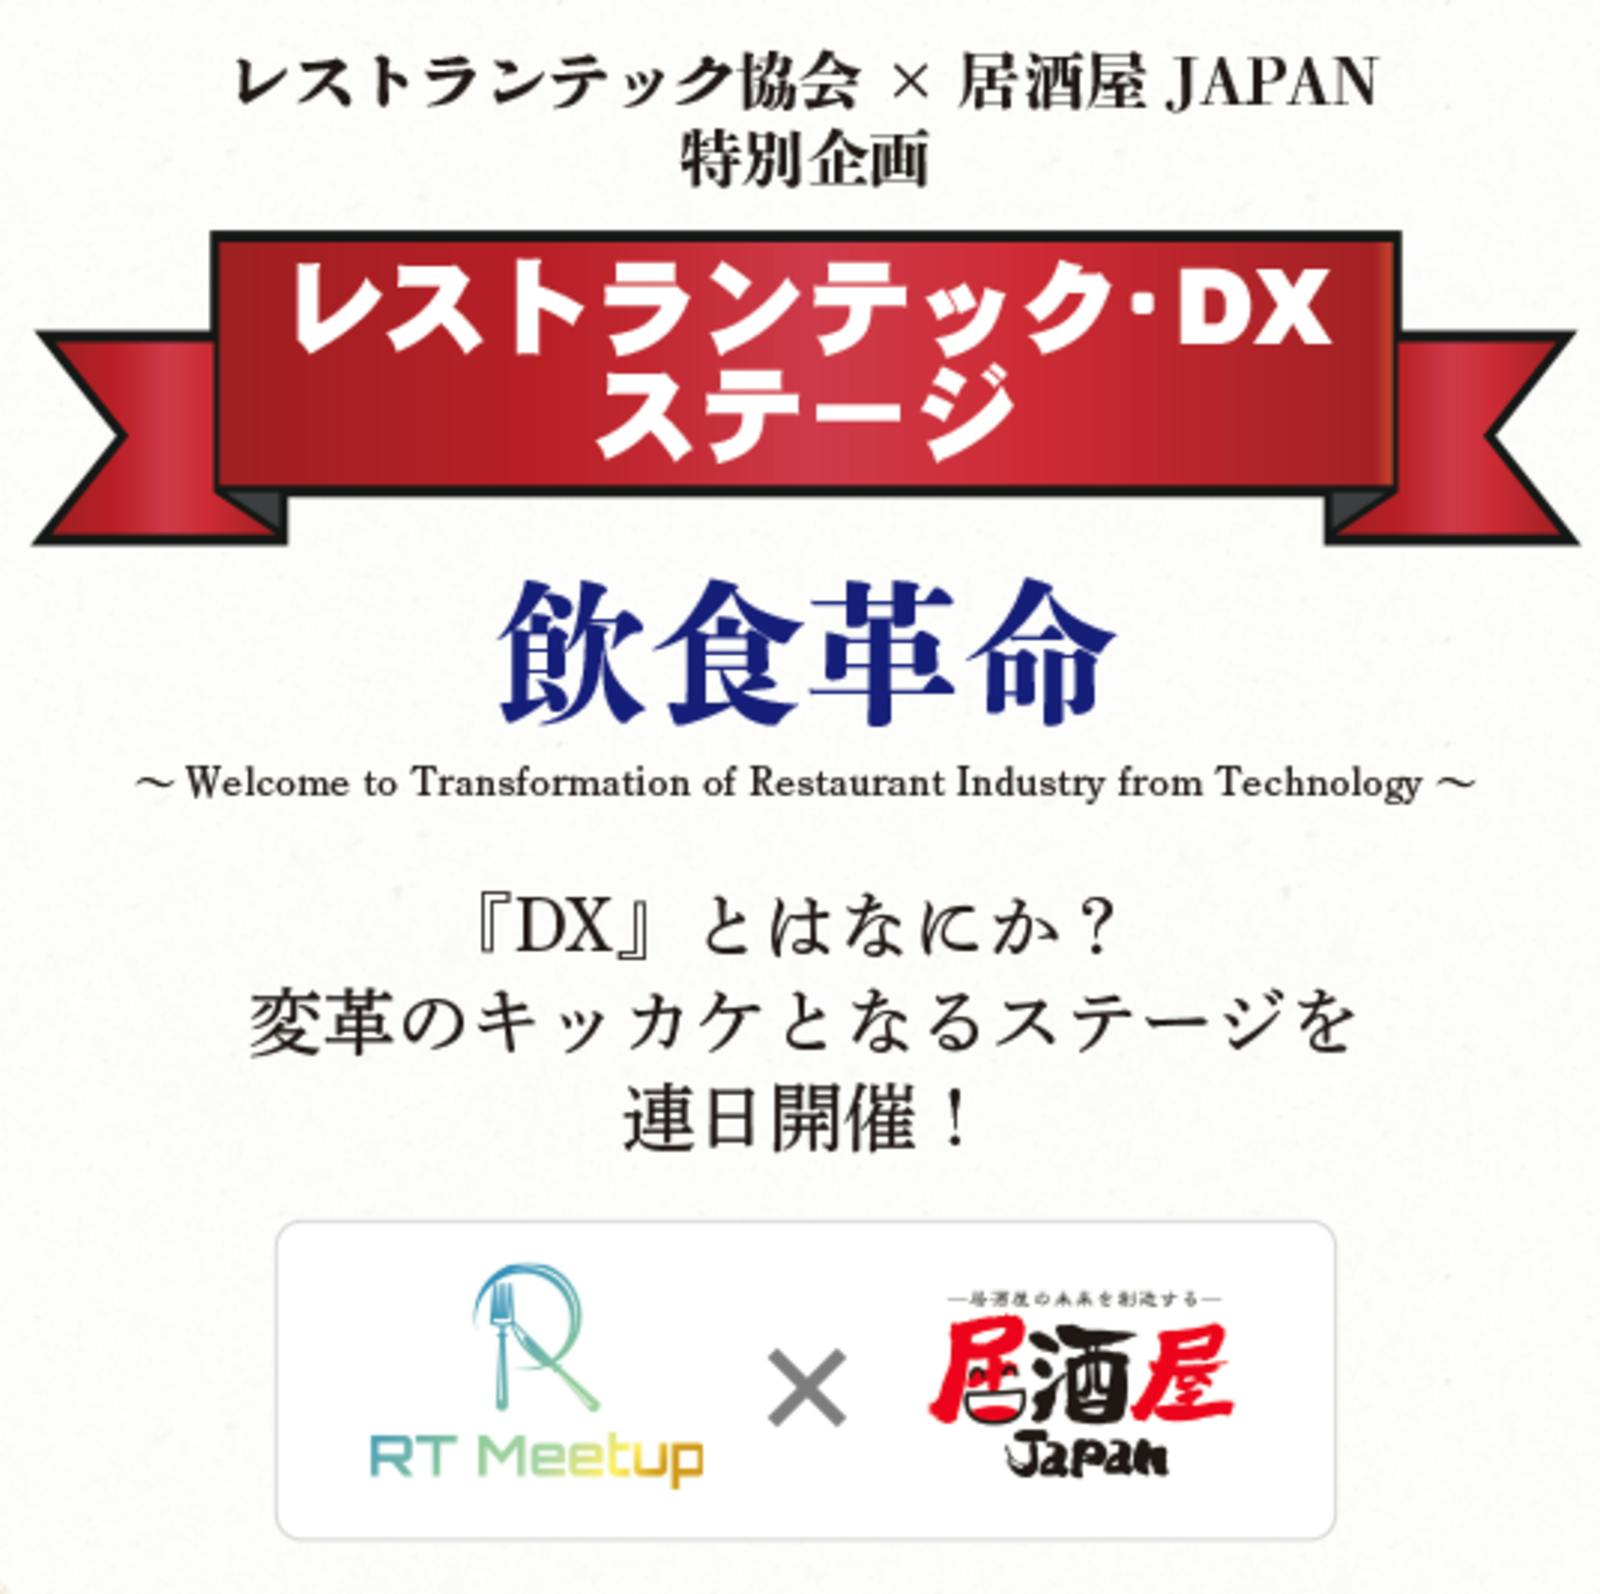 ▲レストランテック協会×居酒屋JAPAN特別企画「レストランテック・DXステージ」